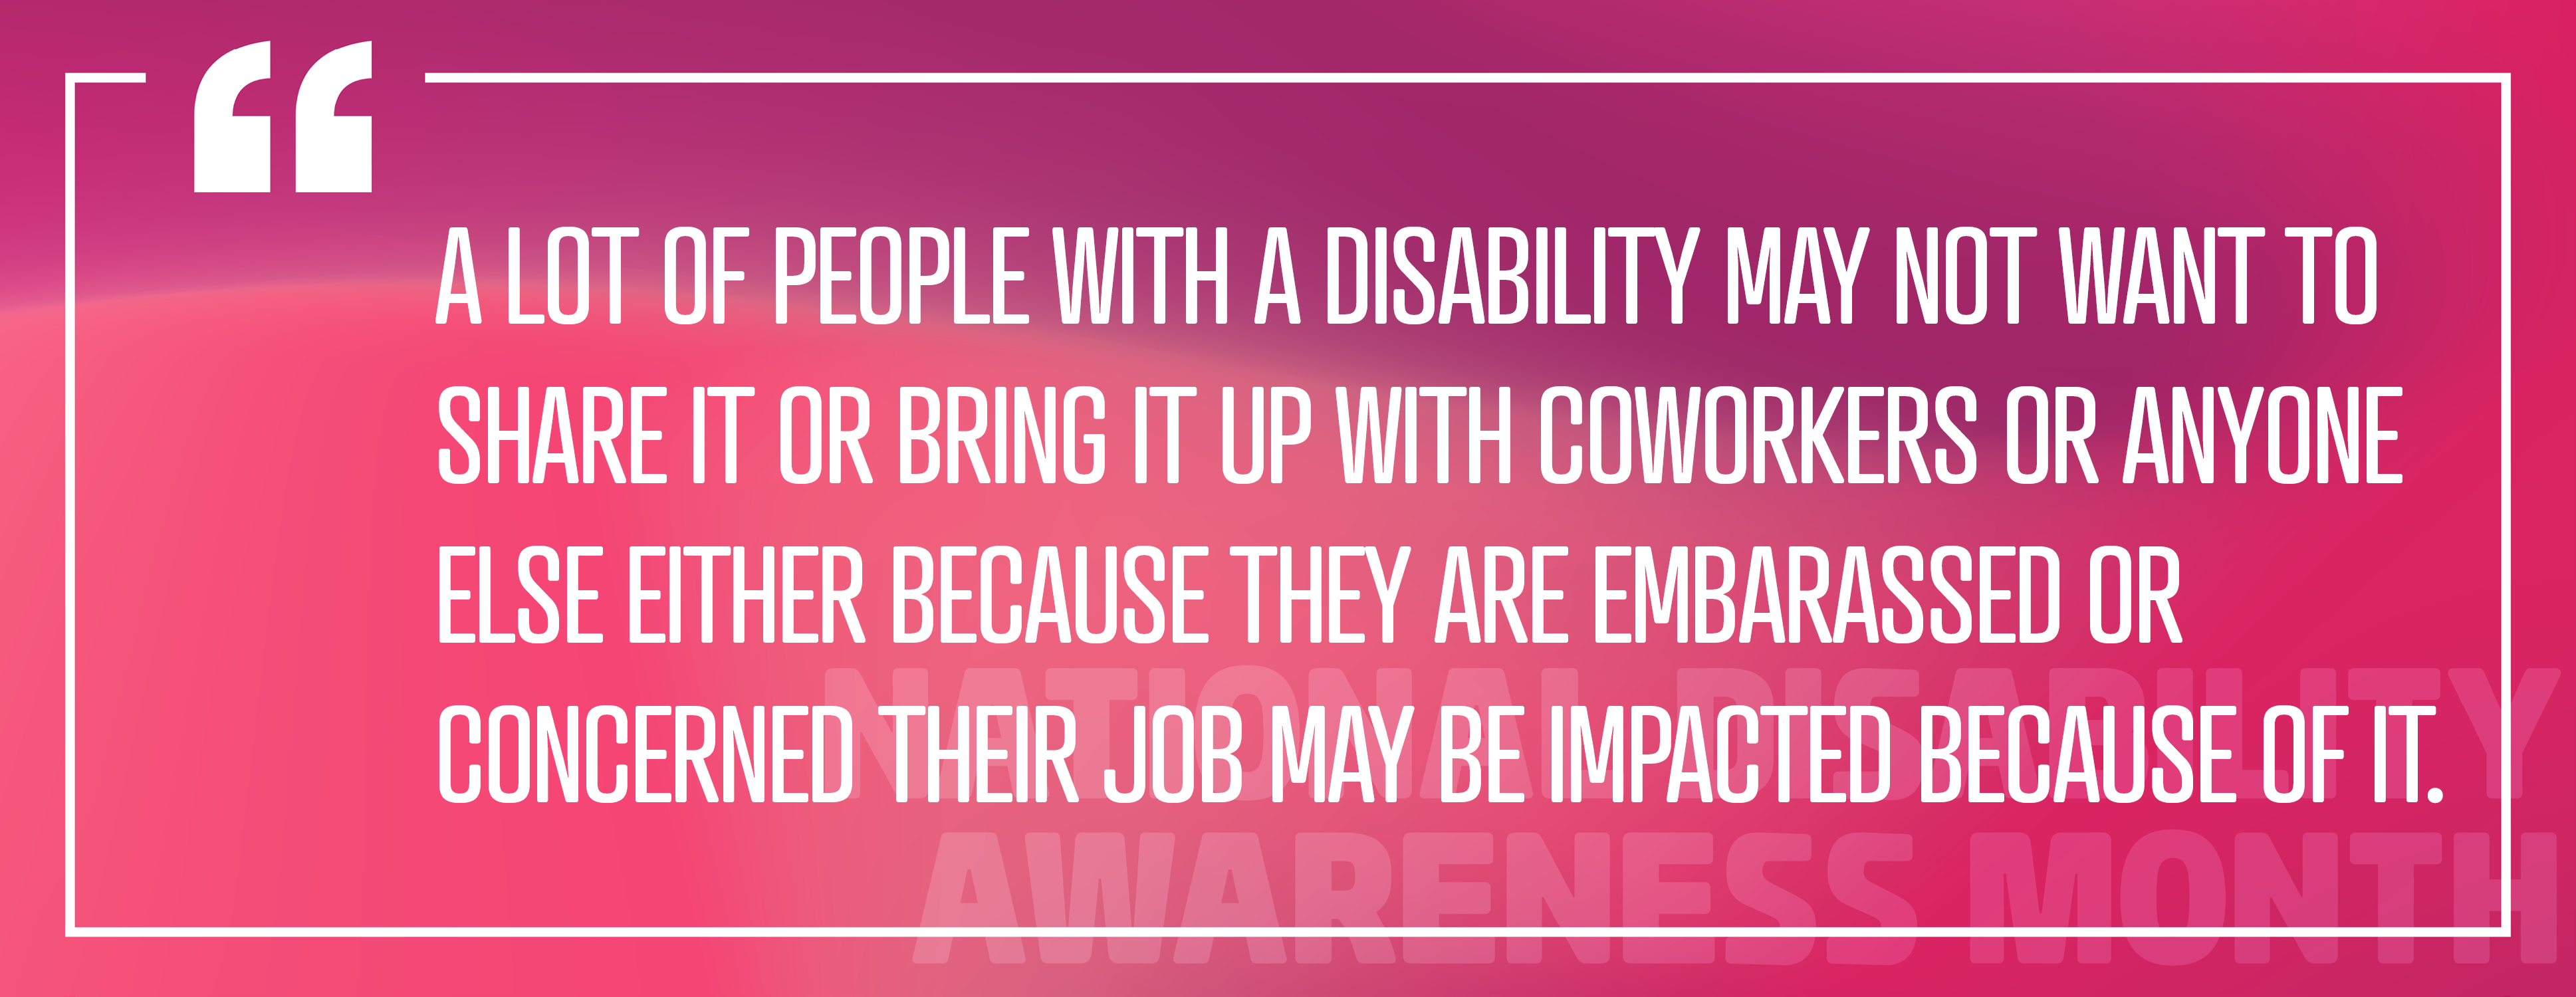 Immagine 3: Impiego di persone con disabilità